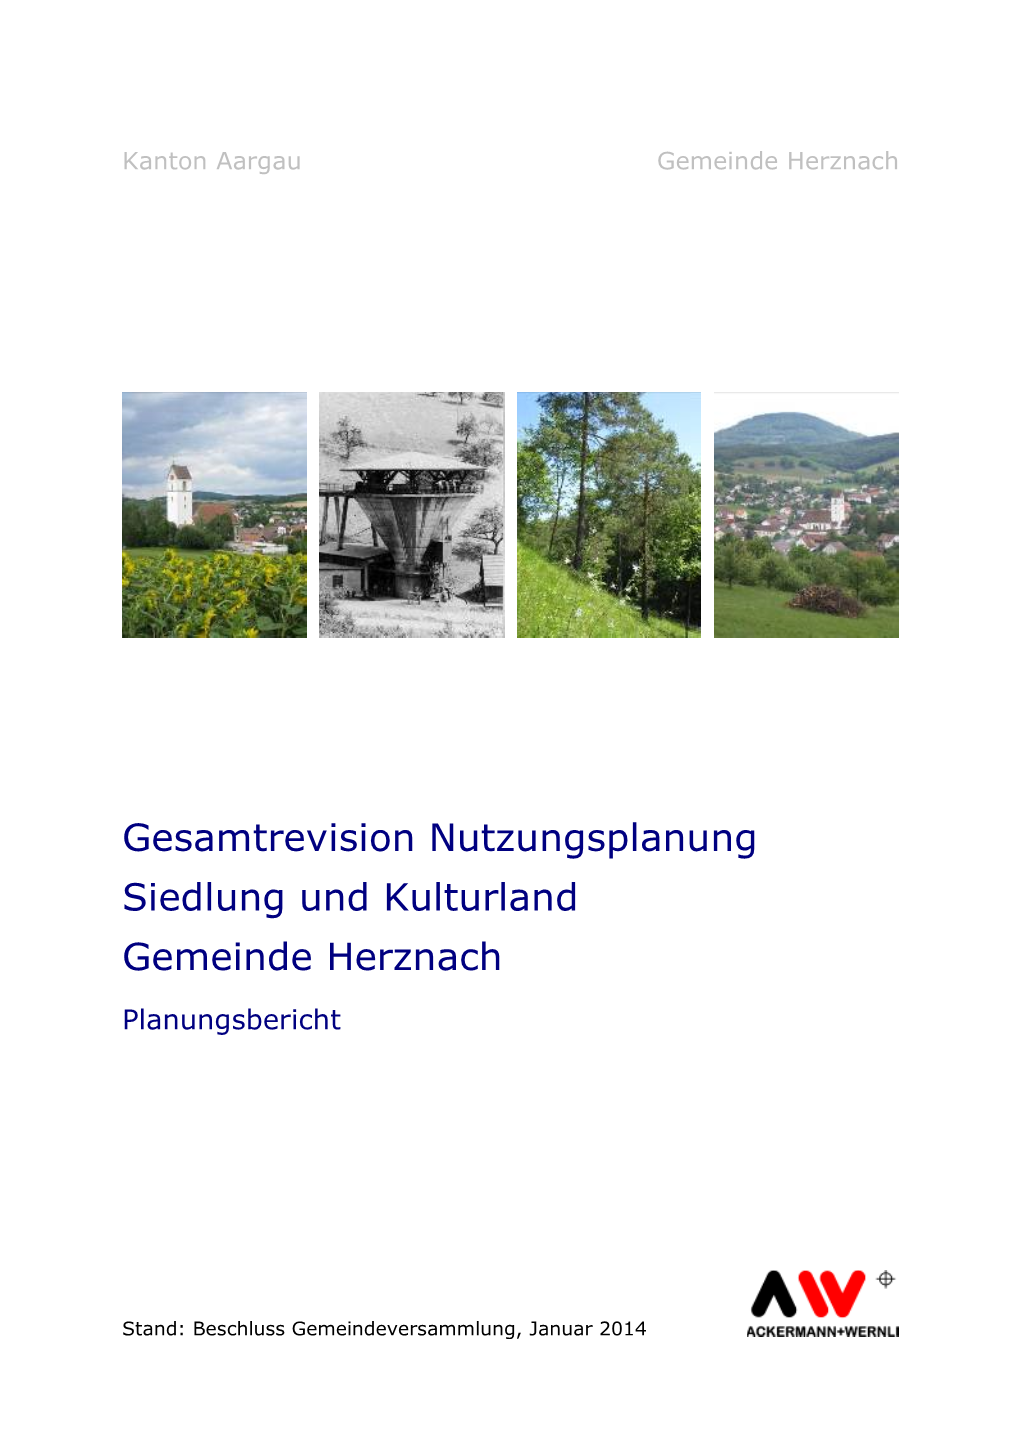 Gesamtrevision Nutzungsplanung Siedlung Und Kulturland Gemeinde Herznach